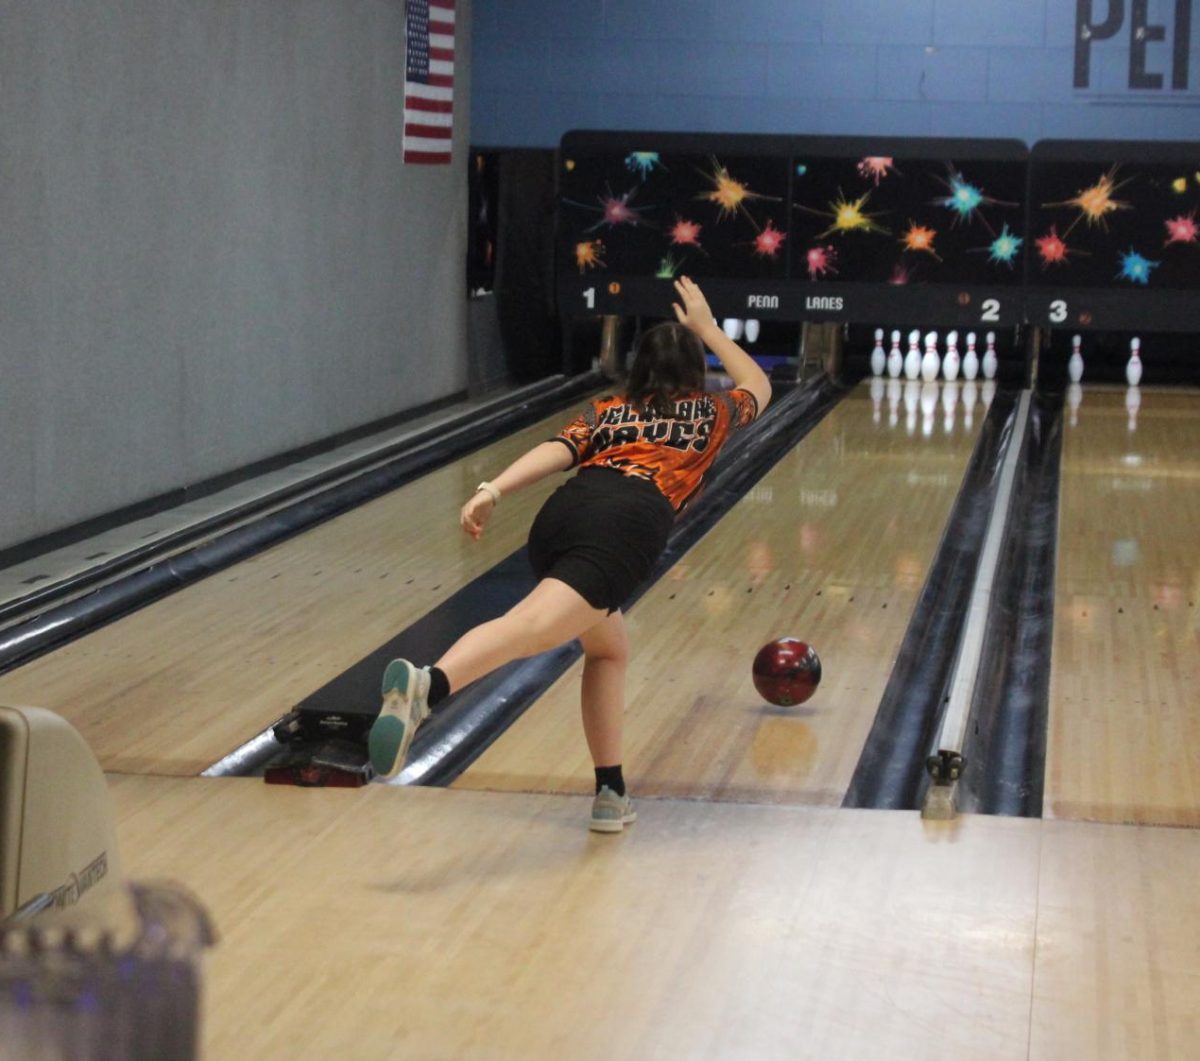 Kundert tosses her ball down the lane.